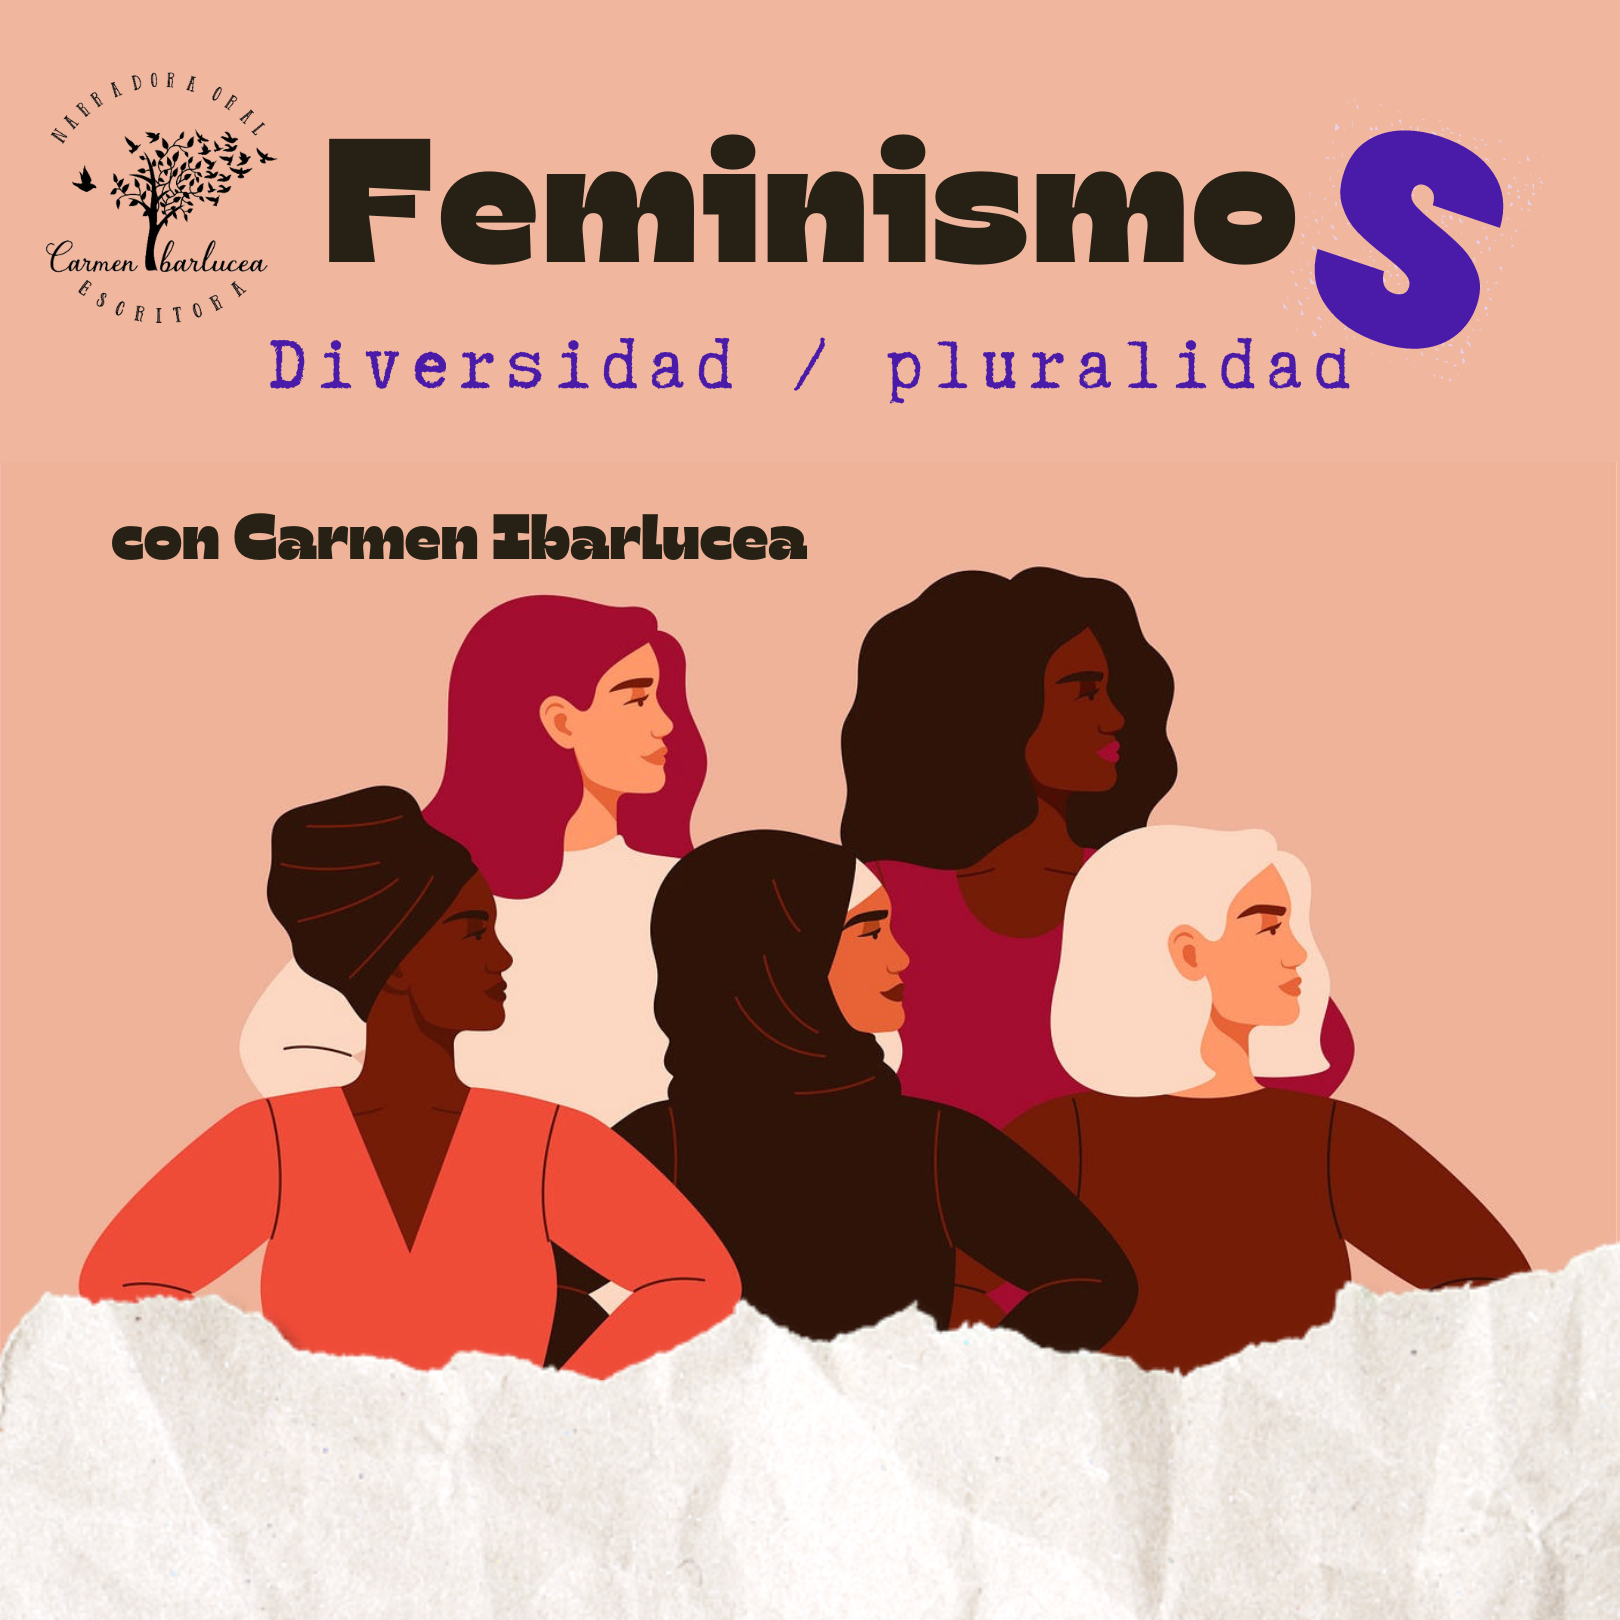 taller feminismos